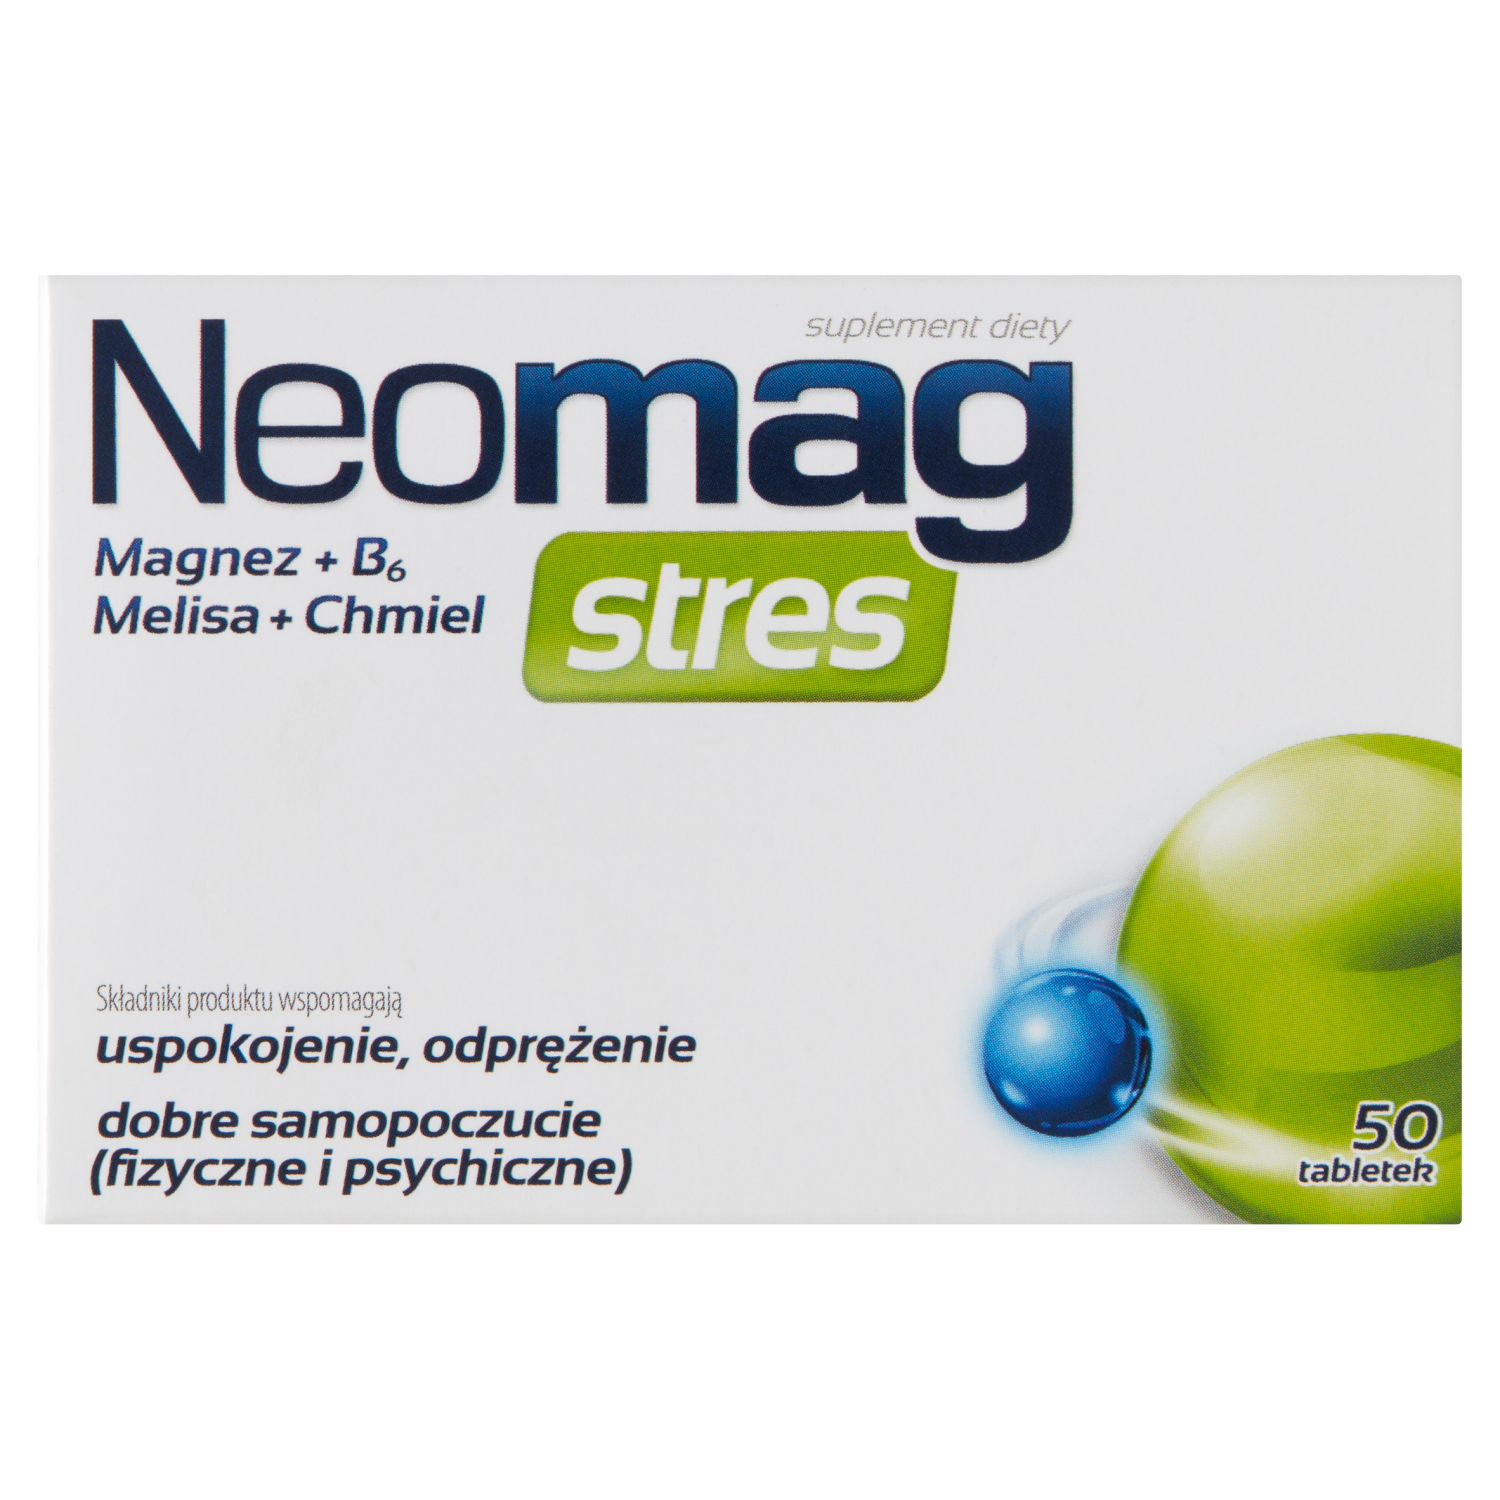 sesja биологически активная добавка 50 таблеток 1 упаковка Neomag Stres биологически активная добавка, 50 таблеток/1 упаковка